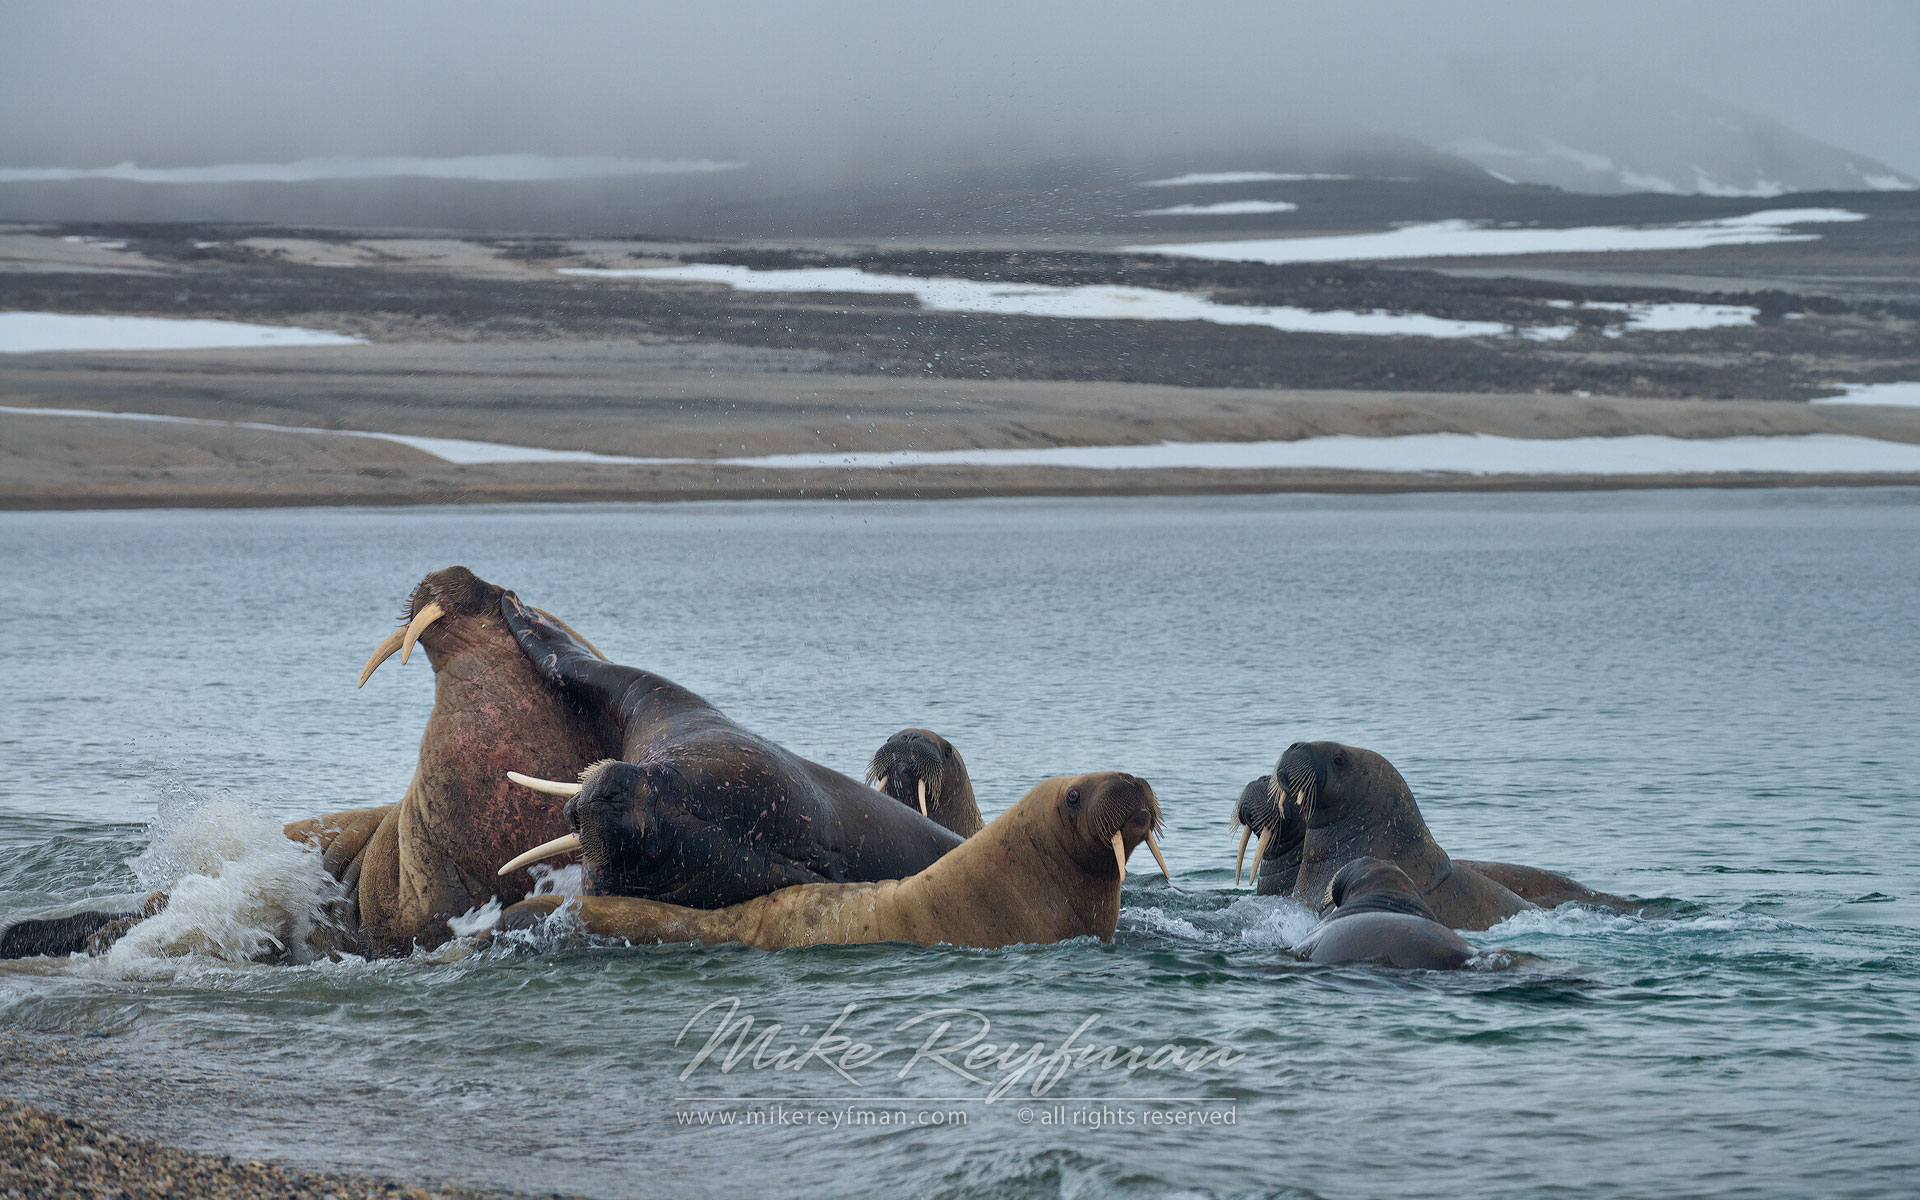 Walruses (Odobenus rosmarus). Torrelnesset, Svalbard (Spitsbergen) Archipelago, Norway. - Wildlife-Svalbard-Spitsbergen-Norway - Mike Reyfman Photography